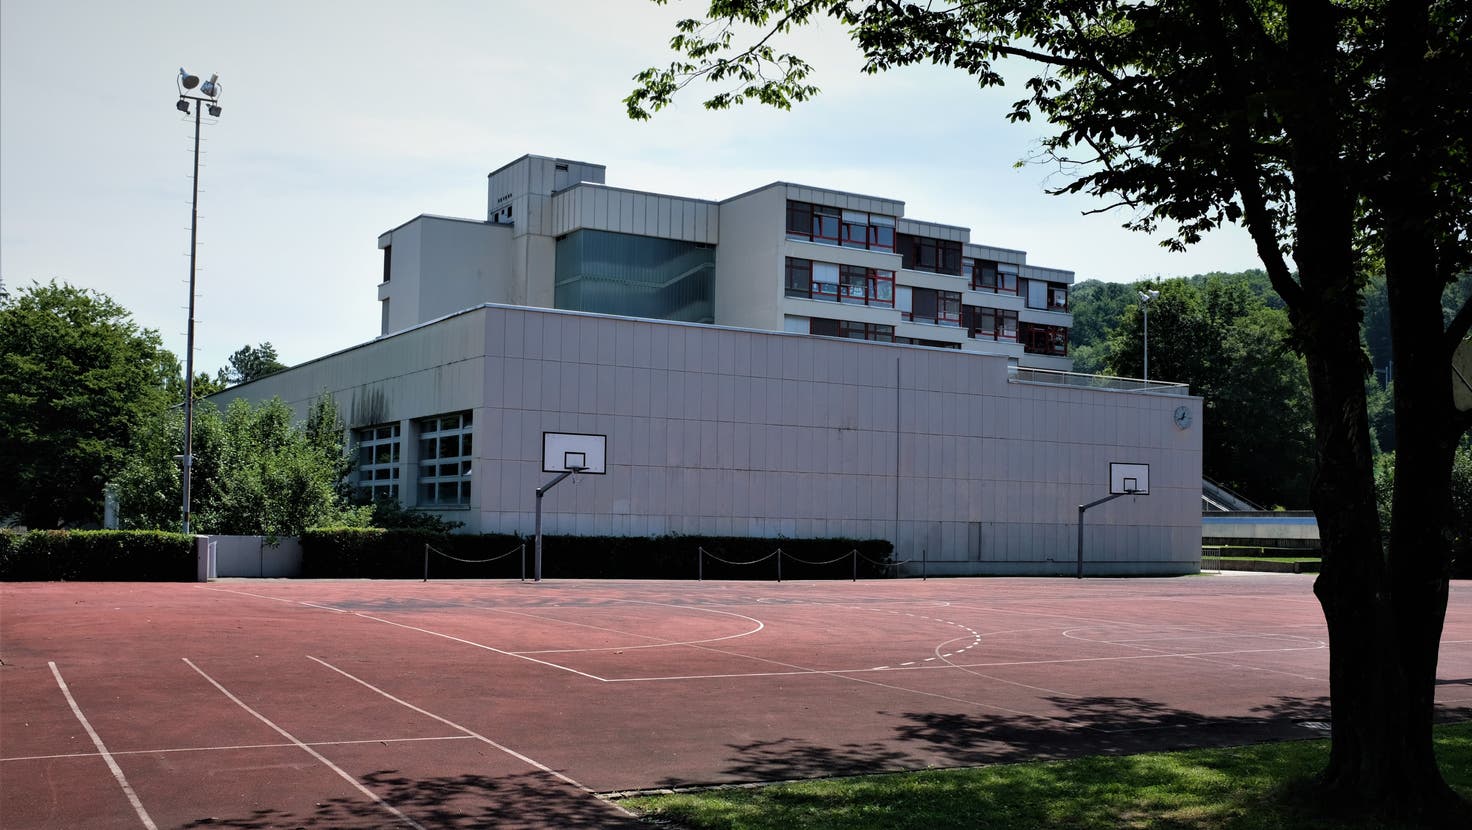 Die Schule Kalktarren in Schlieren wurde 1970 in Betrieb genommen. In den vergangenen Jahrzehnten wurde die Schulanlage immer wieder teilsaniert. (Lukas Elser)